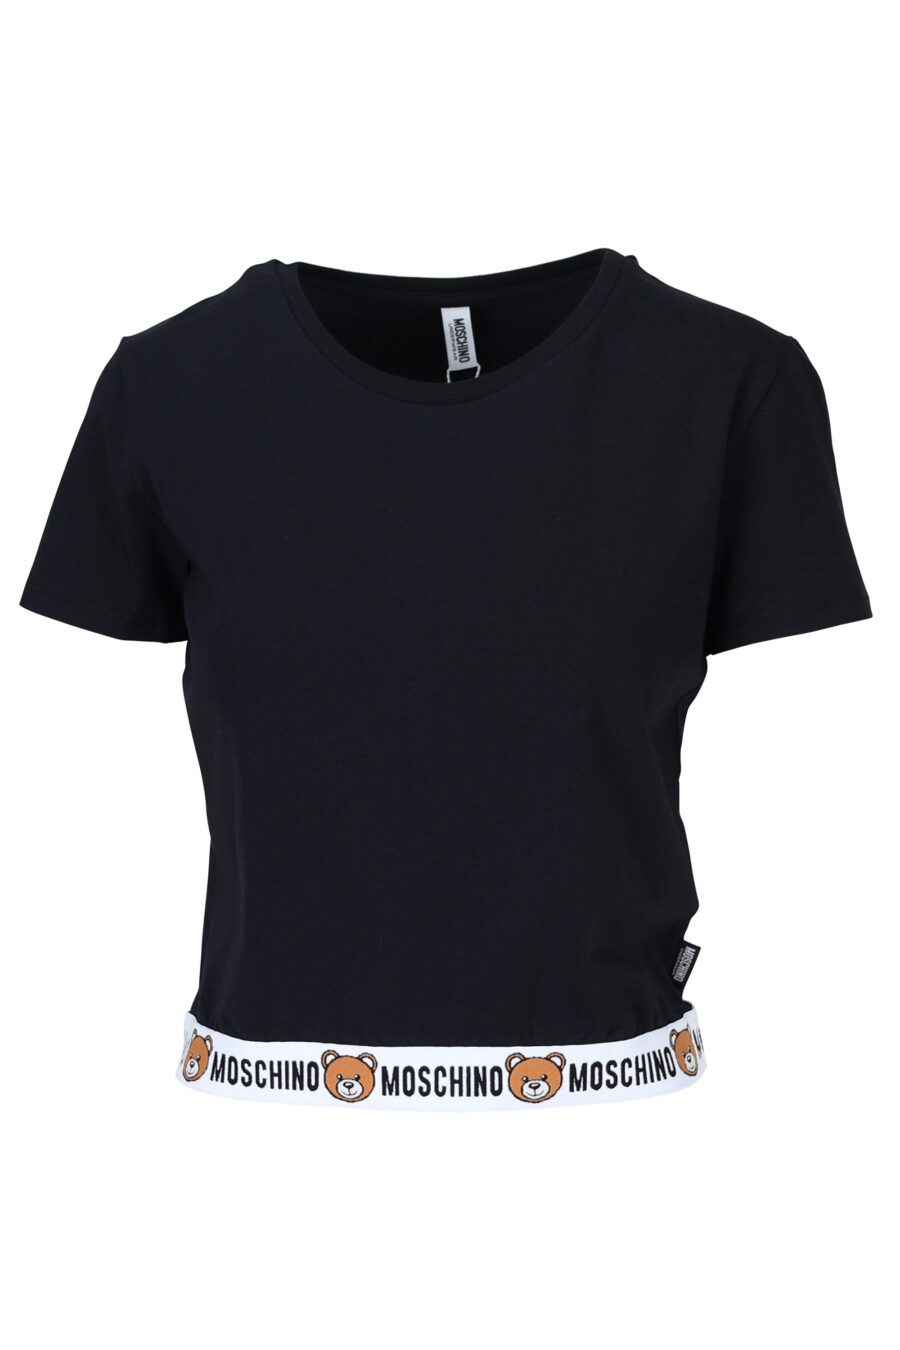 Camiseta negra con logo oso "underbear" en cinta - 667113034157